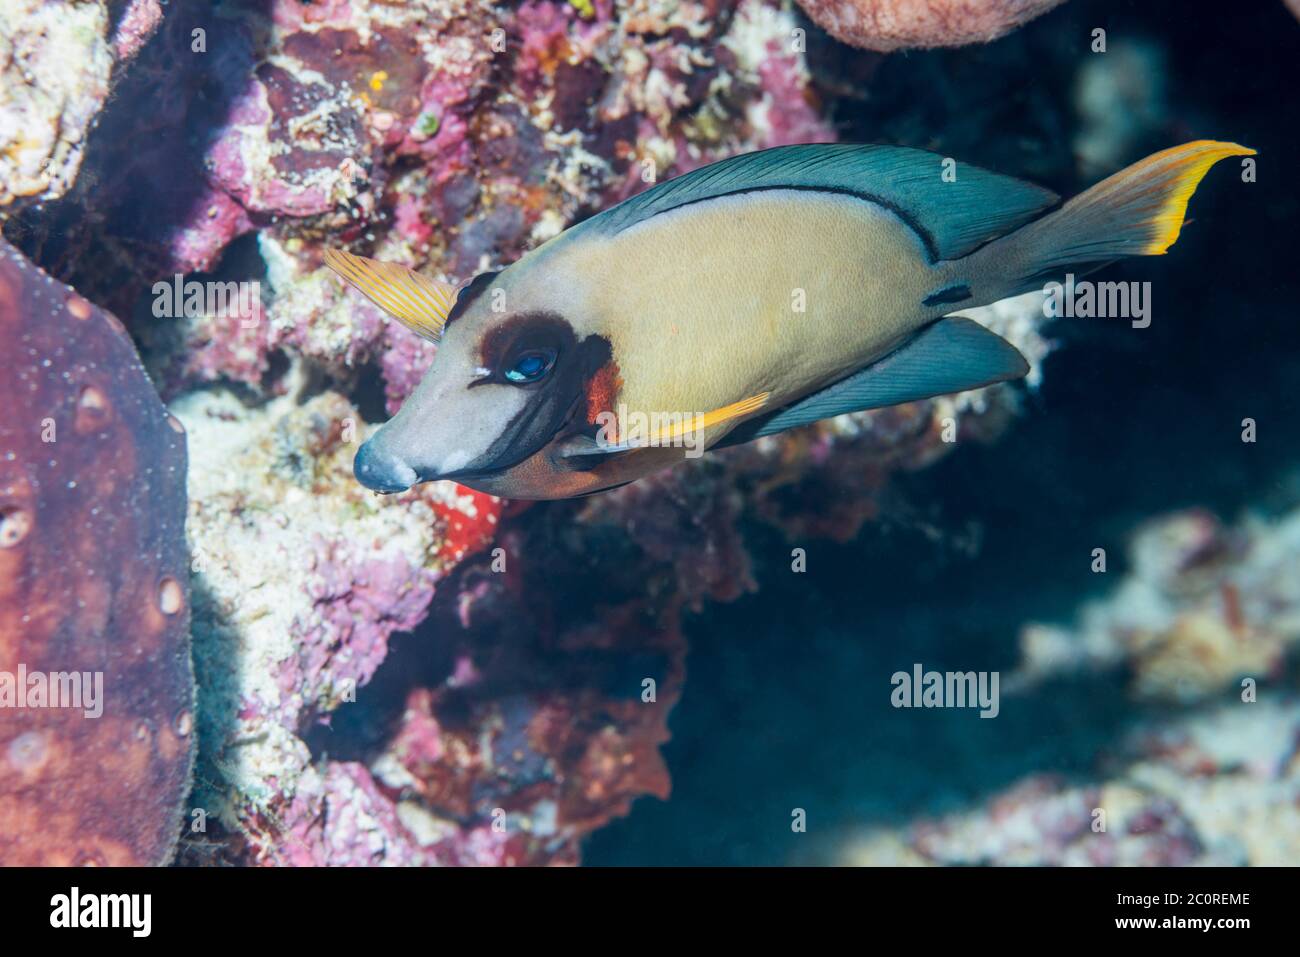 Mimic surgeonfish, Chocolat tang [Acanthurus pyroferus].  North Sulawesi, Indonesia. Stock Photo